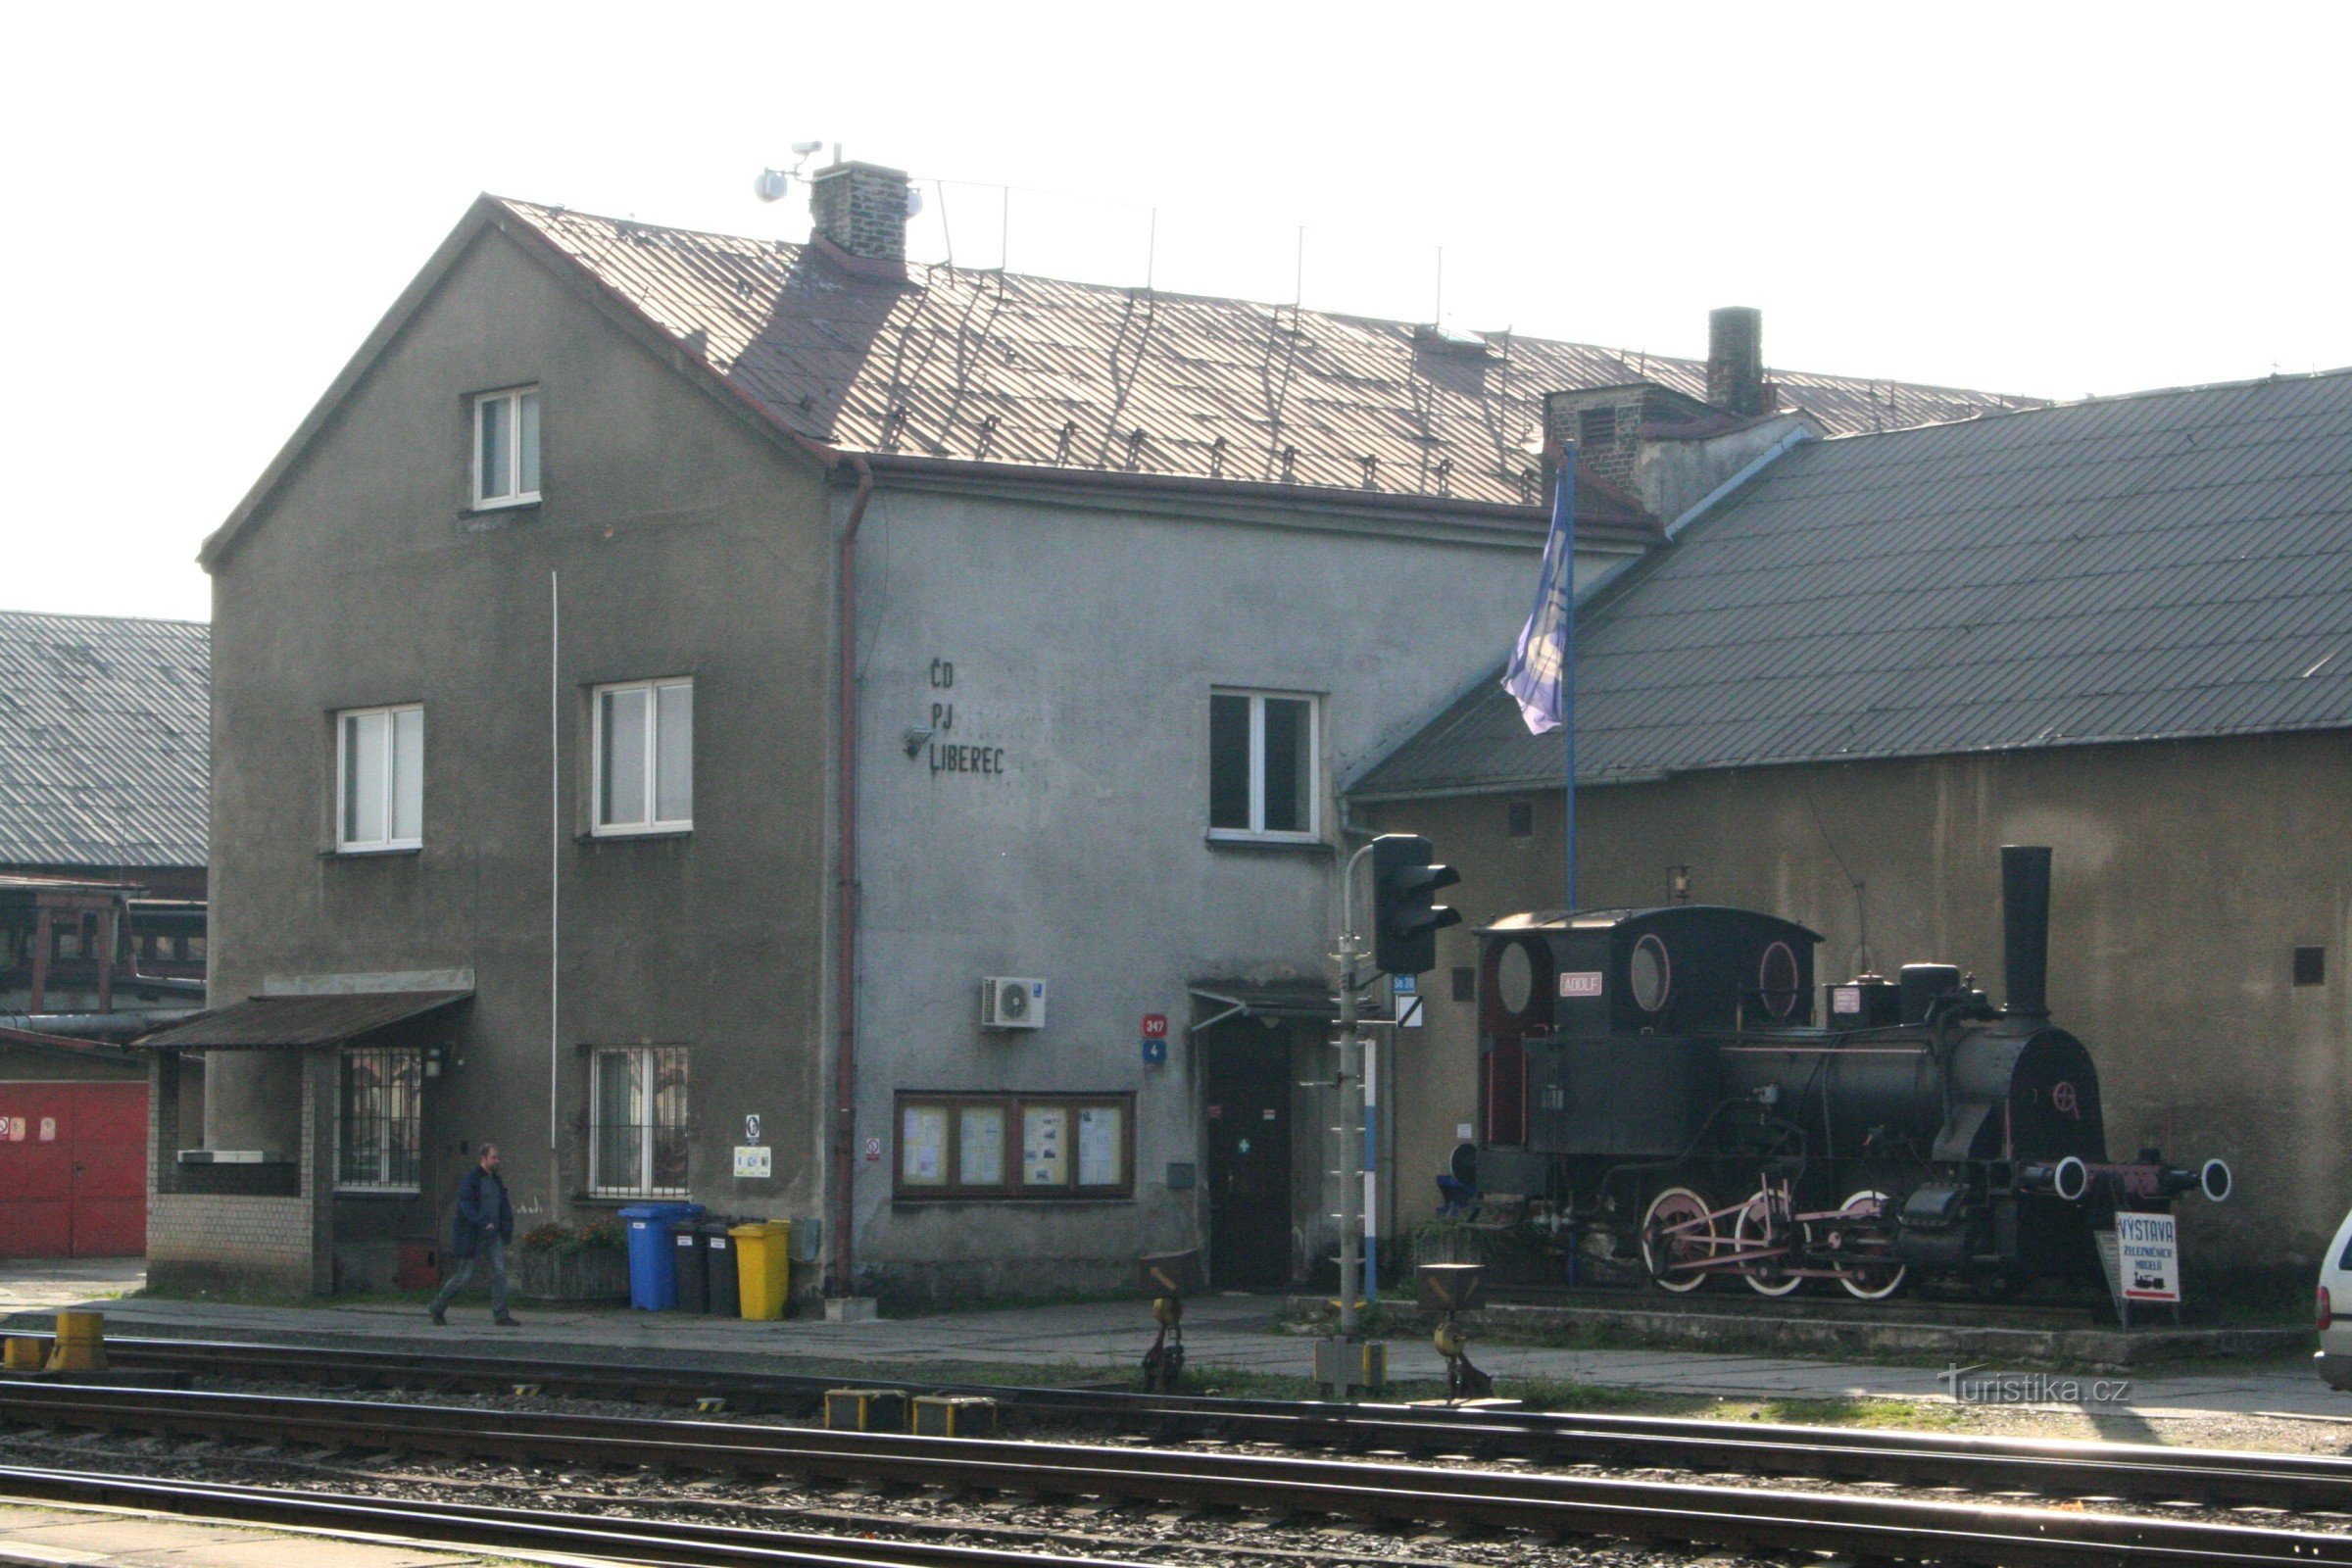 Monumento ferroviario - locomotora de vapor Adolf